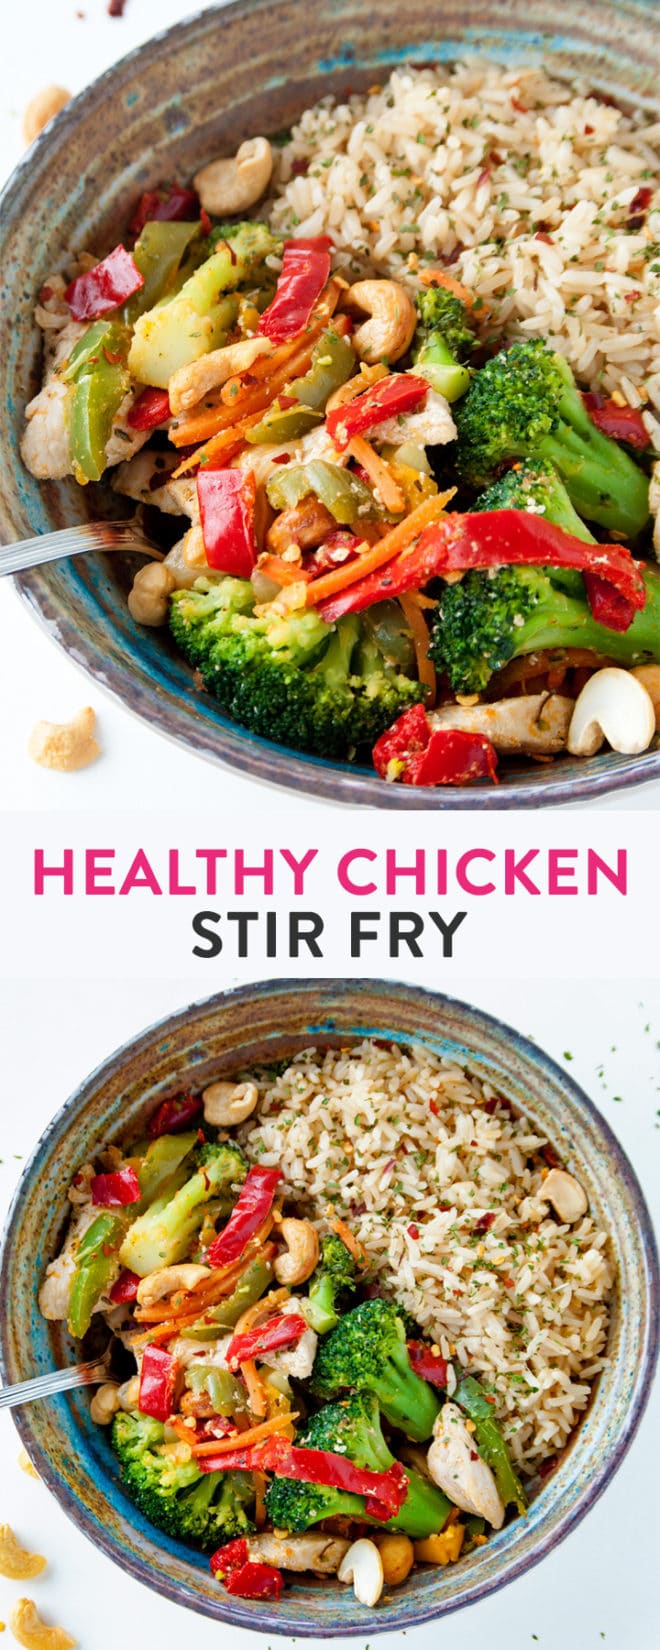 Healthy Chicken Stir Fry | The Bewitchin' Kitchen